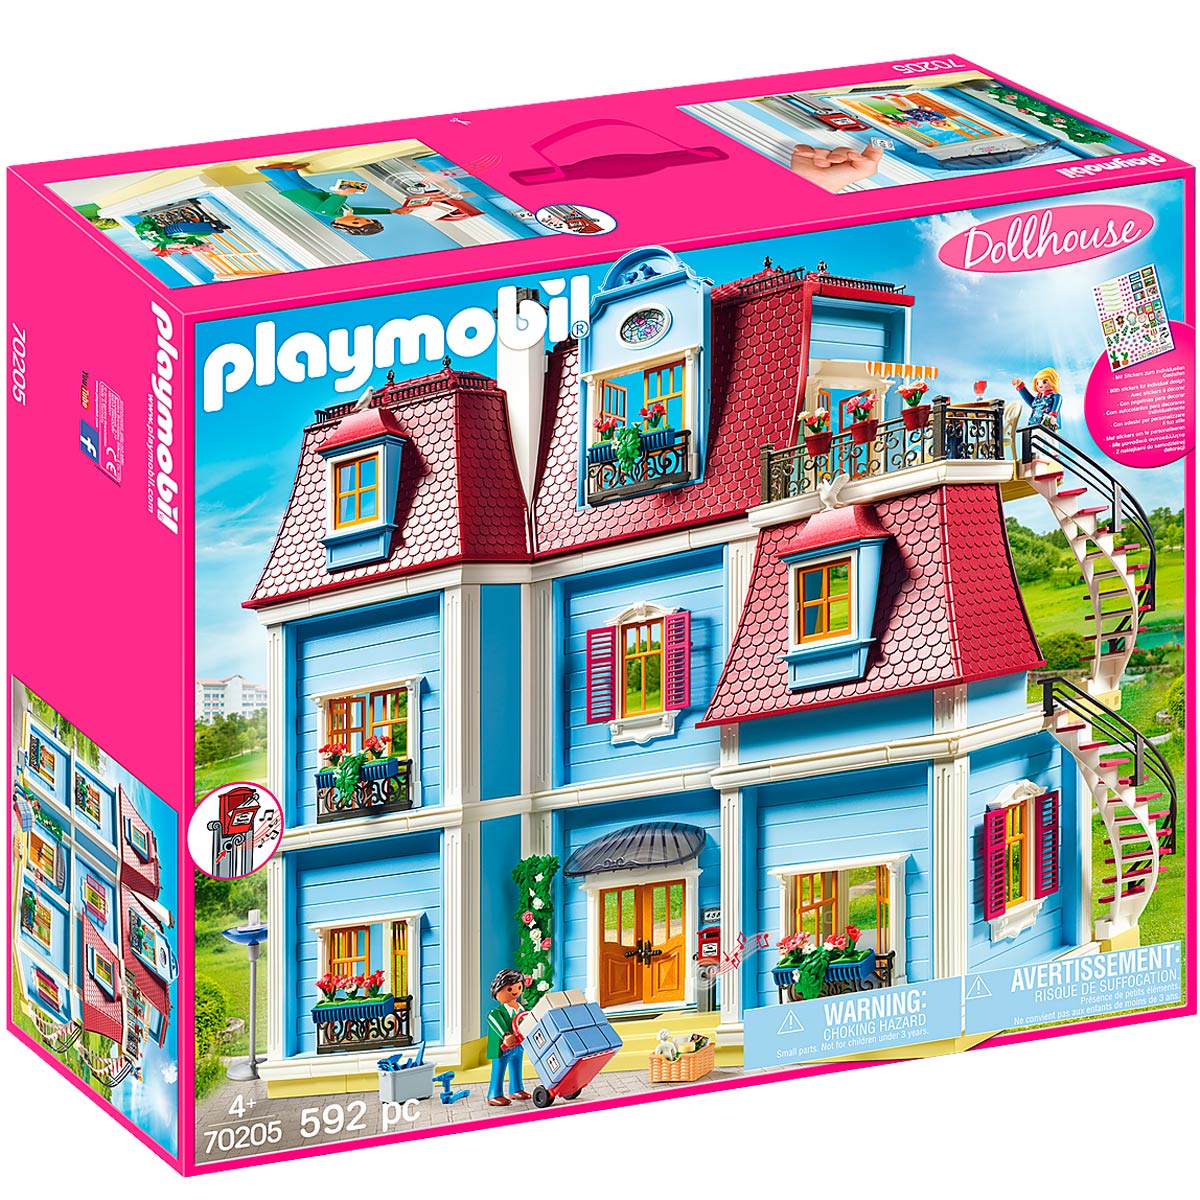 9 Años No Definido - No Definido - Playmobil Dollhouse - Drim